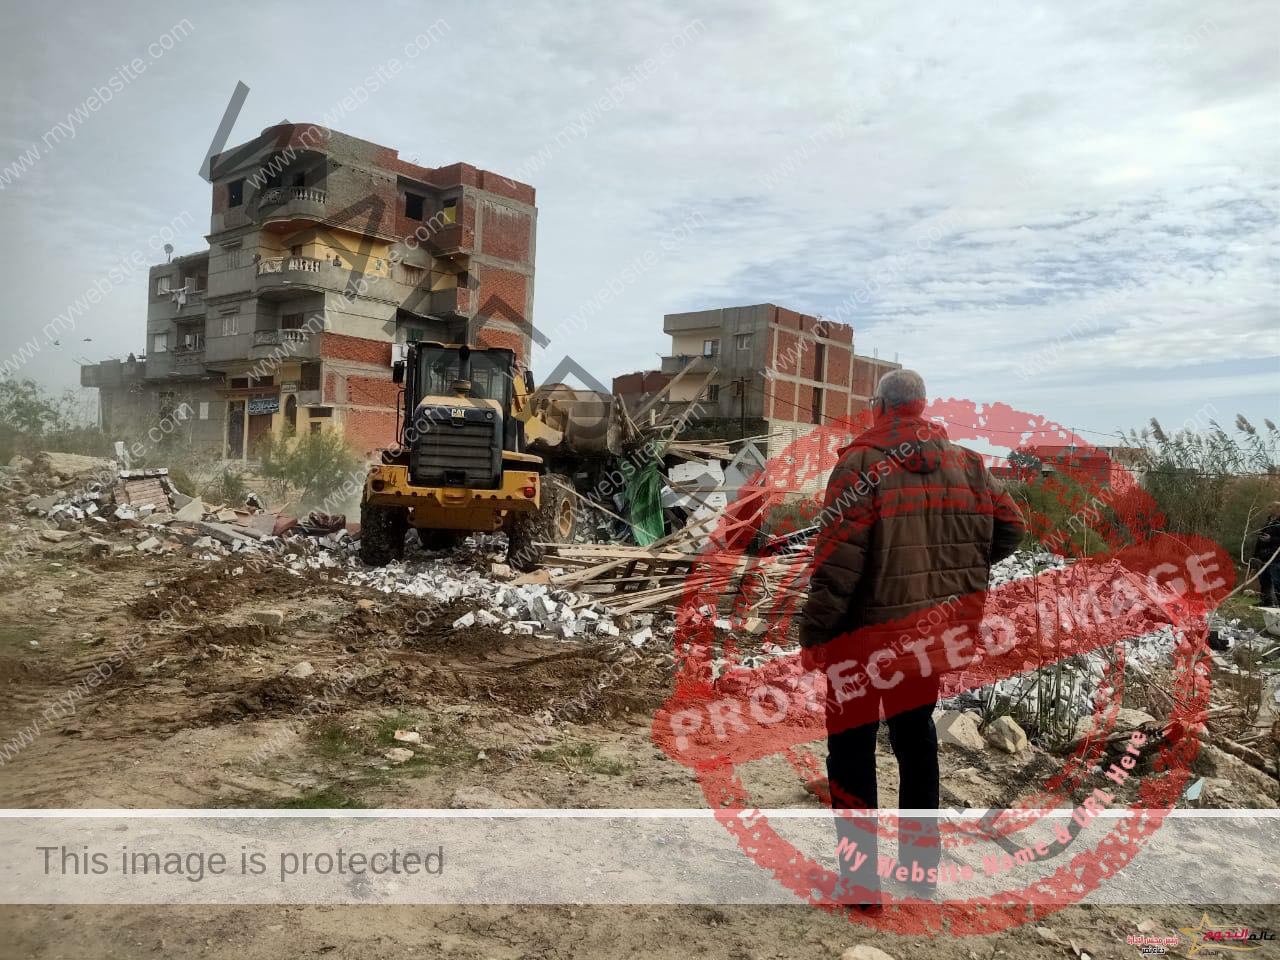 محافظ الإسكندرية يوجه بتنفيذ حملات مُكبرة لإزالة التعديات على الأراضي الزراعية وإيقاف أعمال البناء المخالف بأحياء الثغر